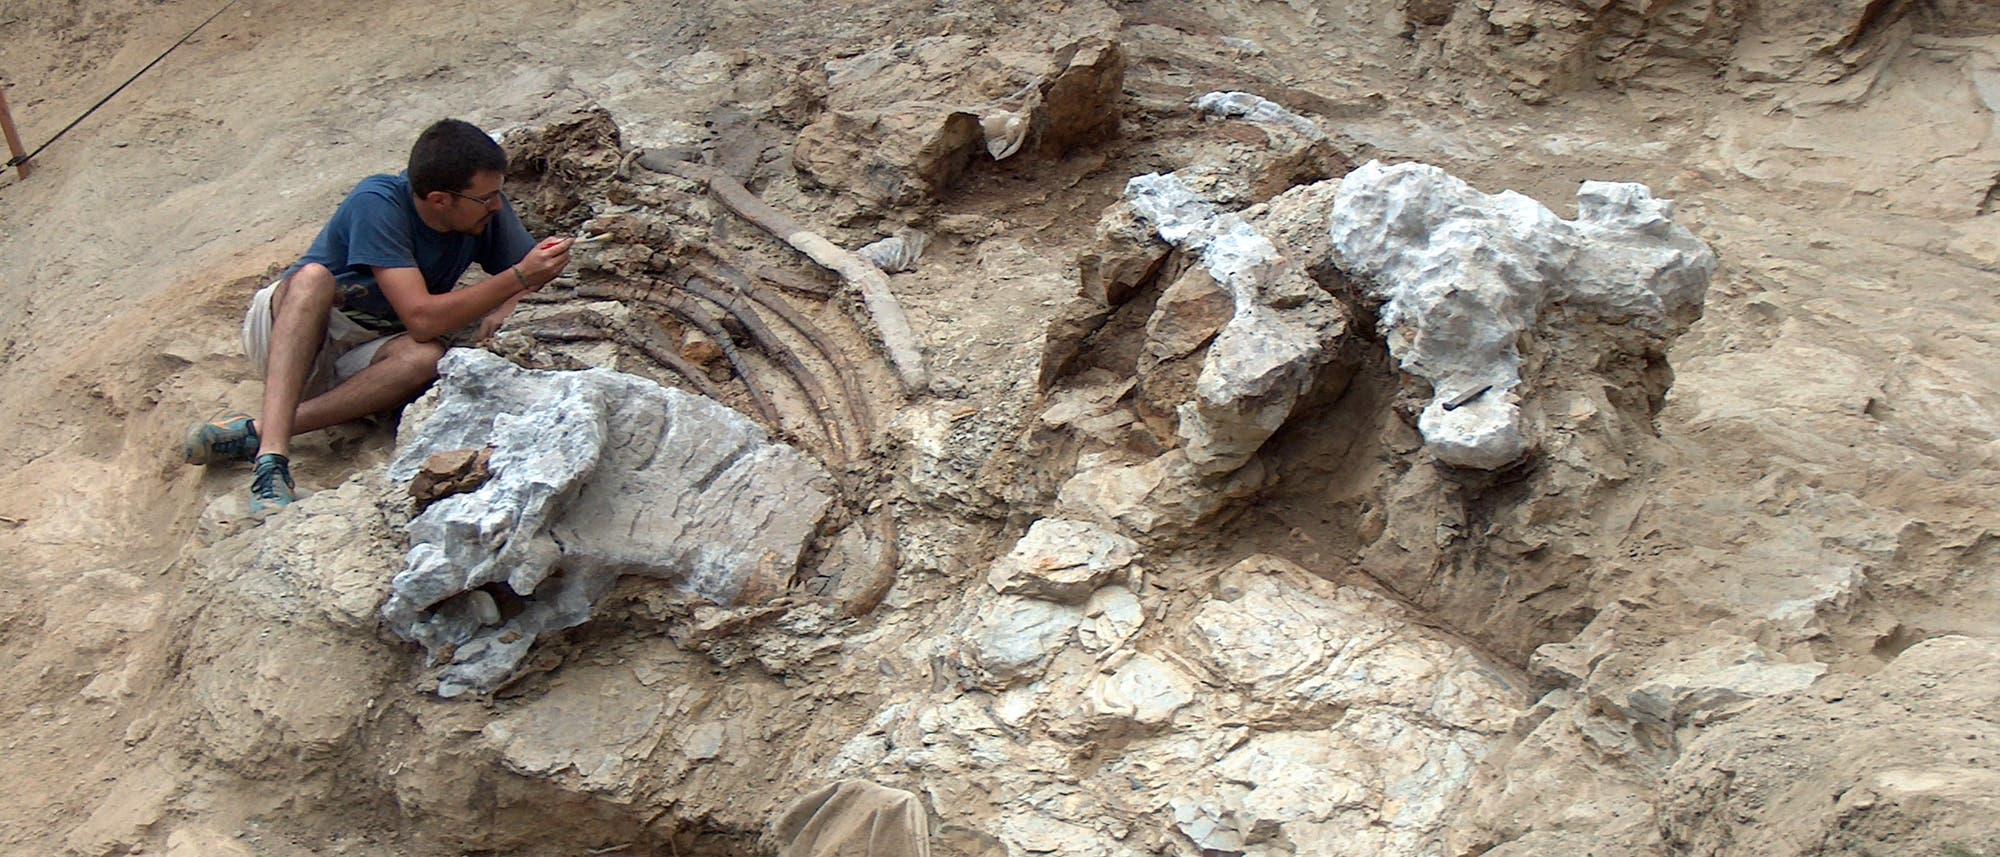 Ein Paläontologe sitzt in einer Grube in einer Fossilienlagerstätte und arbeitet an versteinerten Knochen. Sie sind teilweise freigelegt.